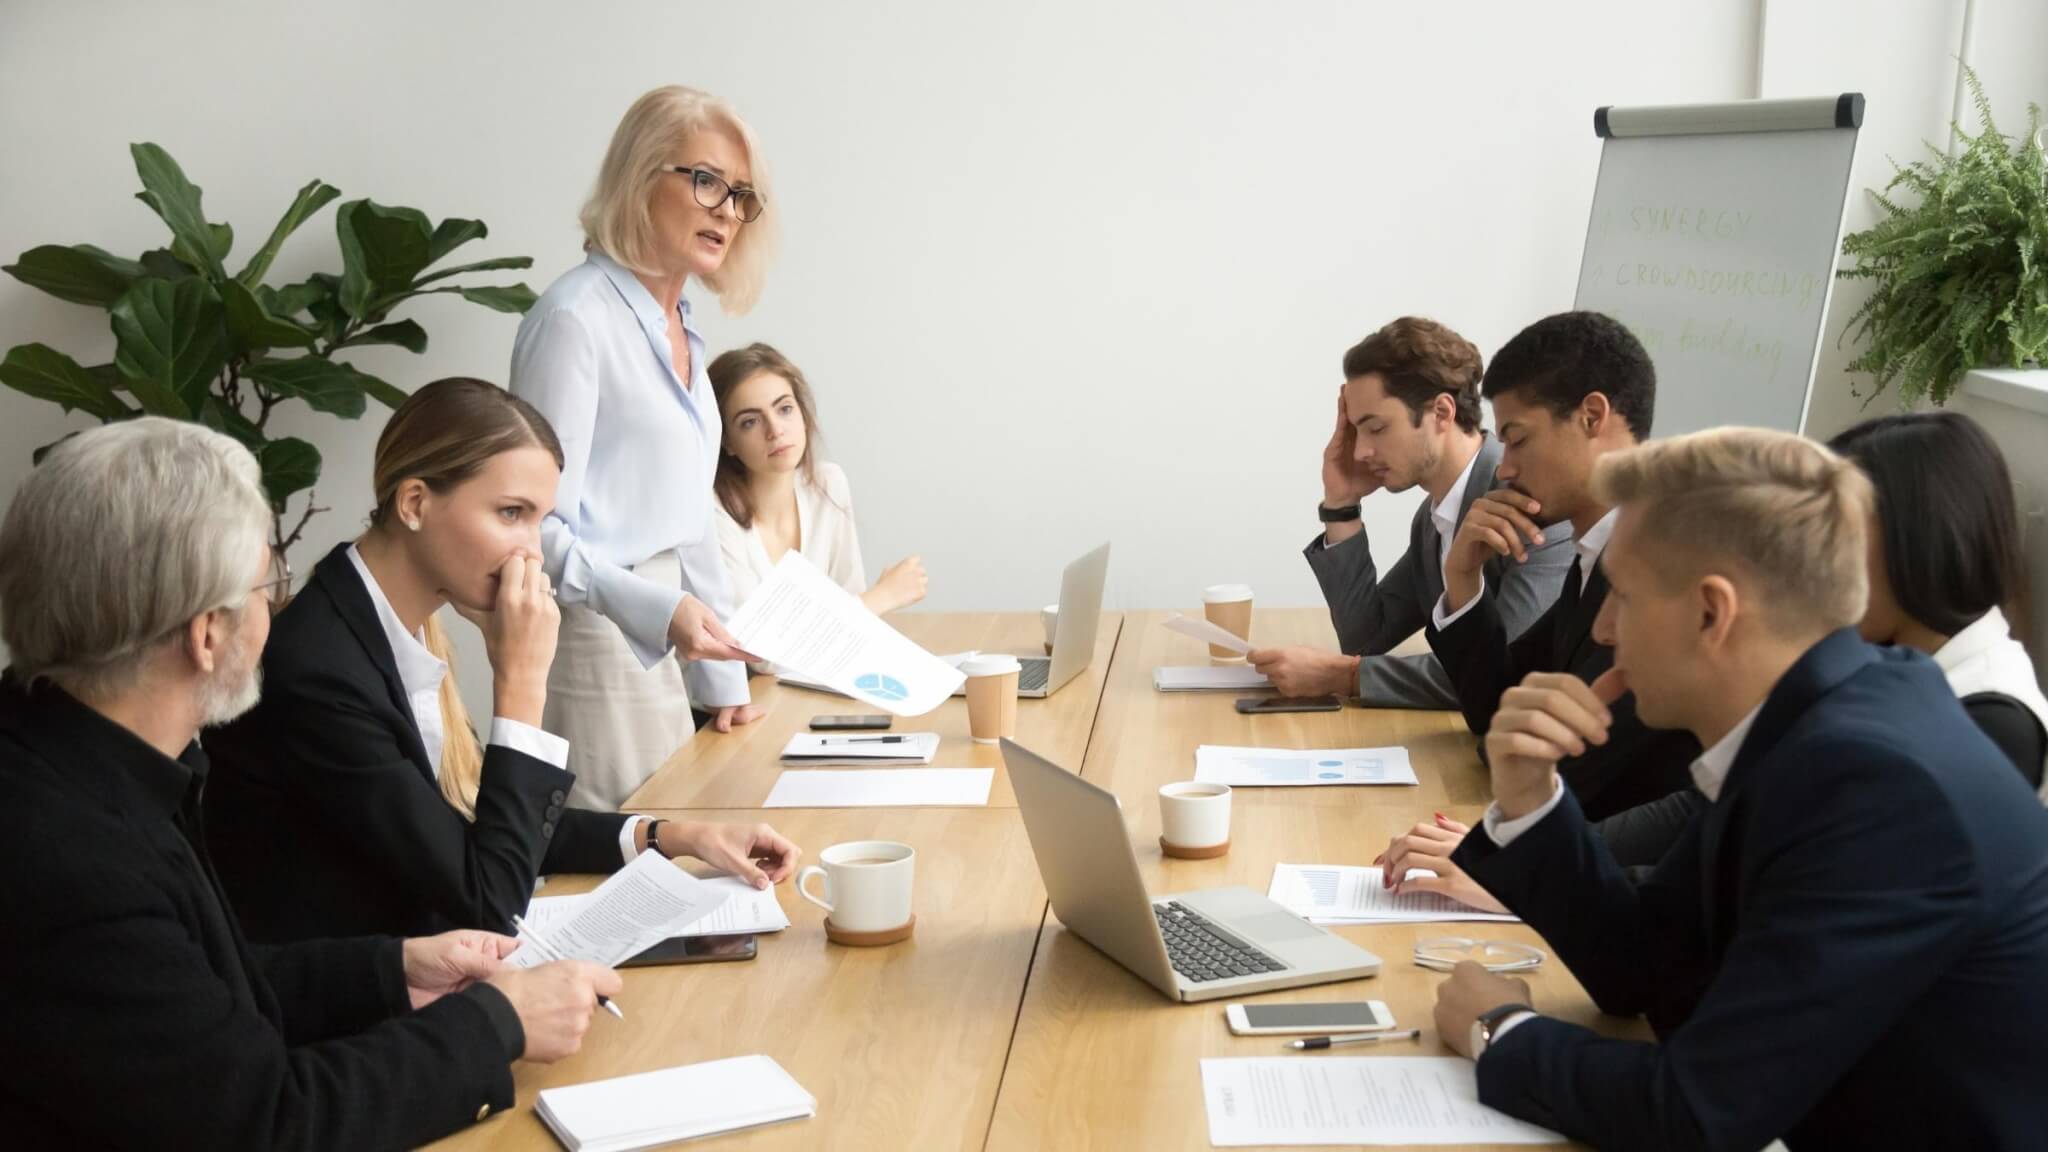 No Agenda, No Attenda: How To Improve Meetings